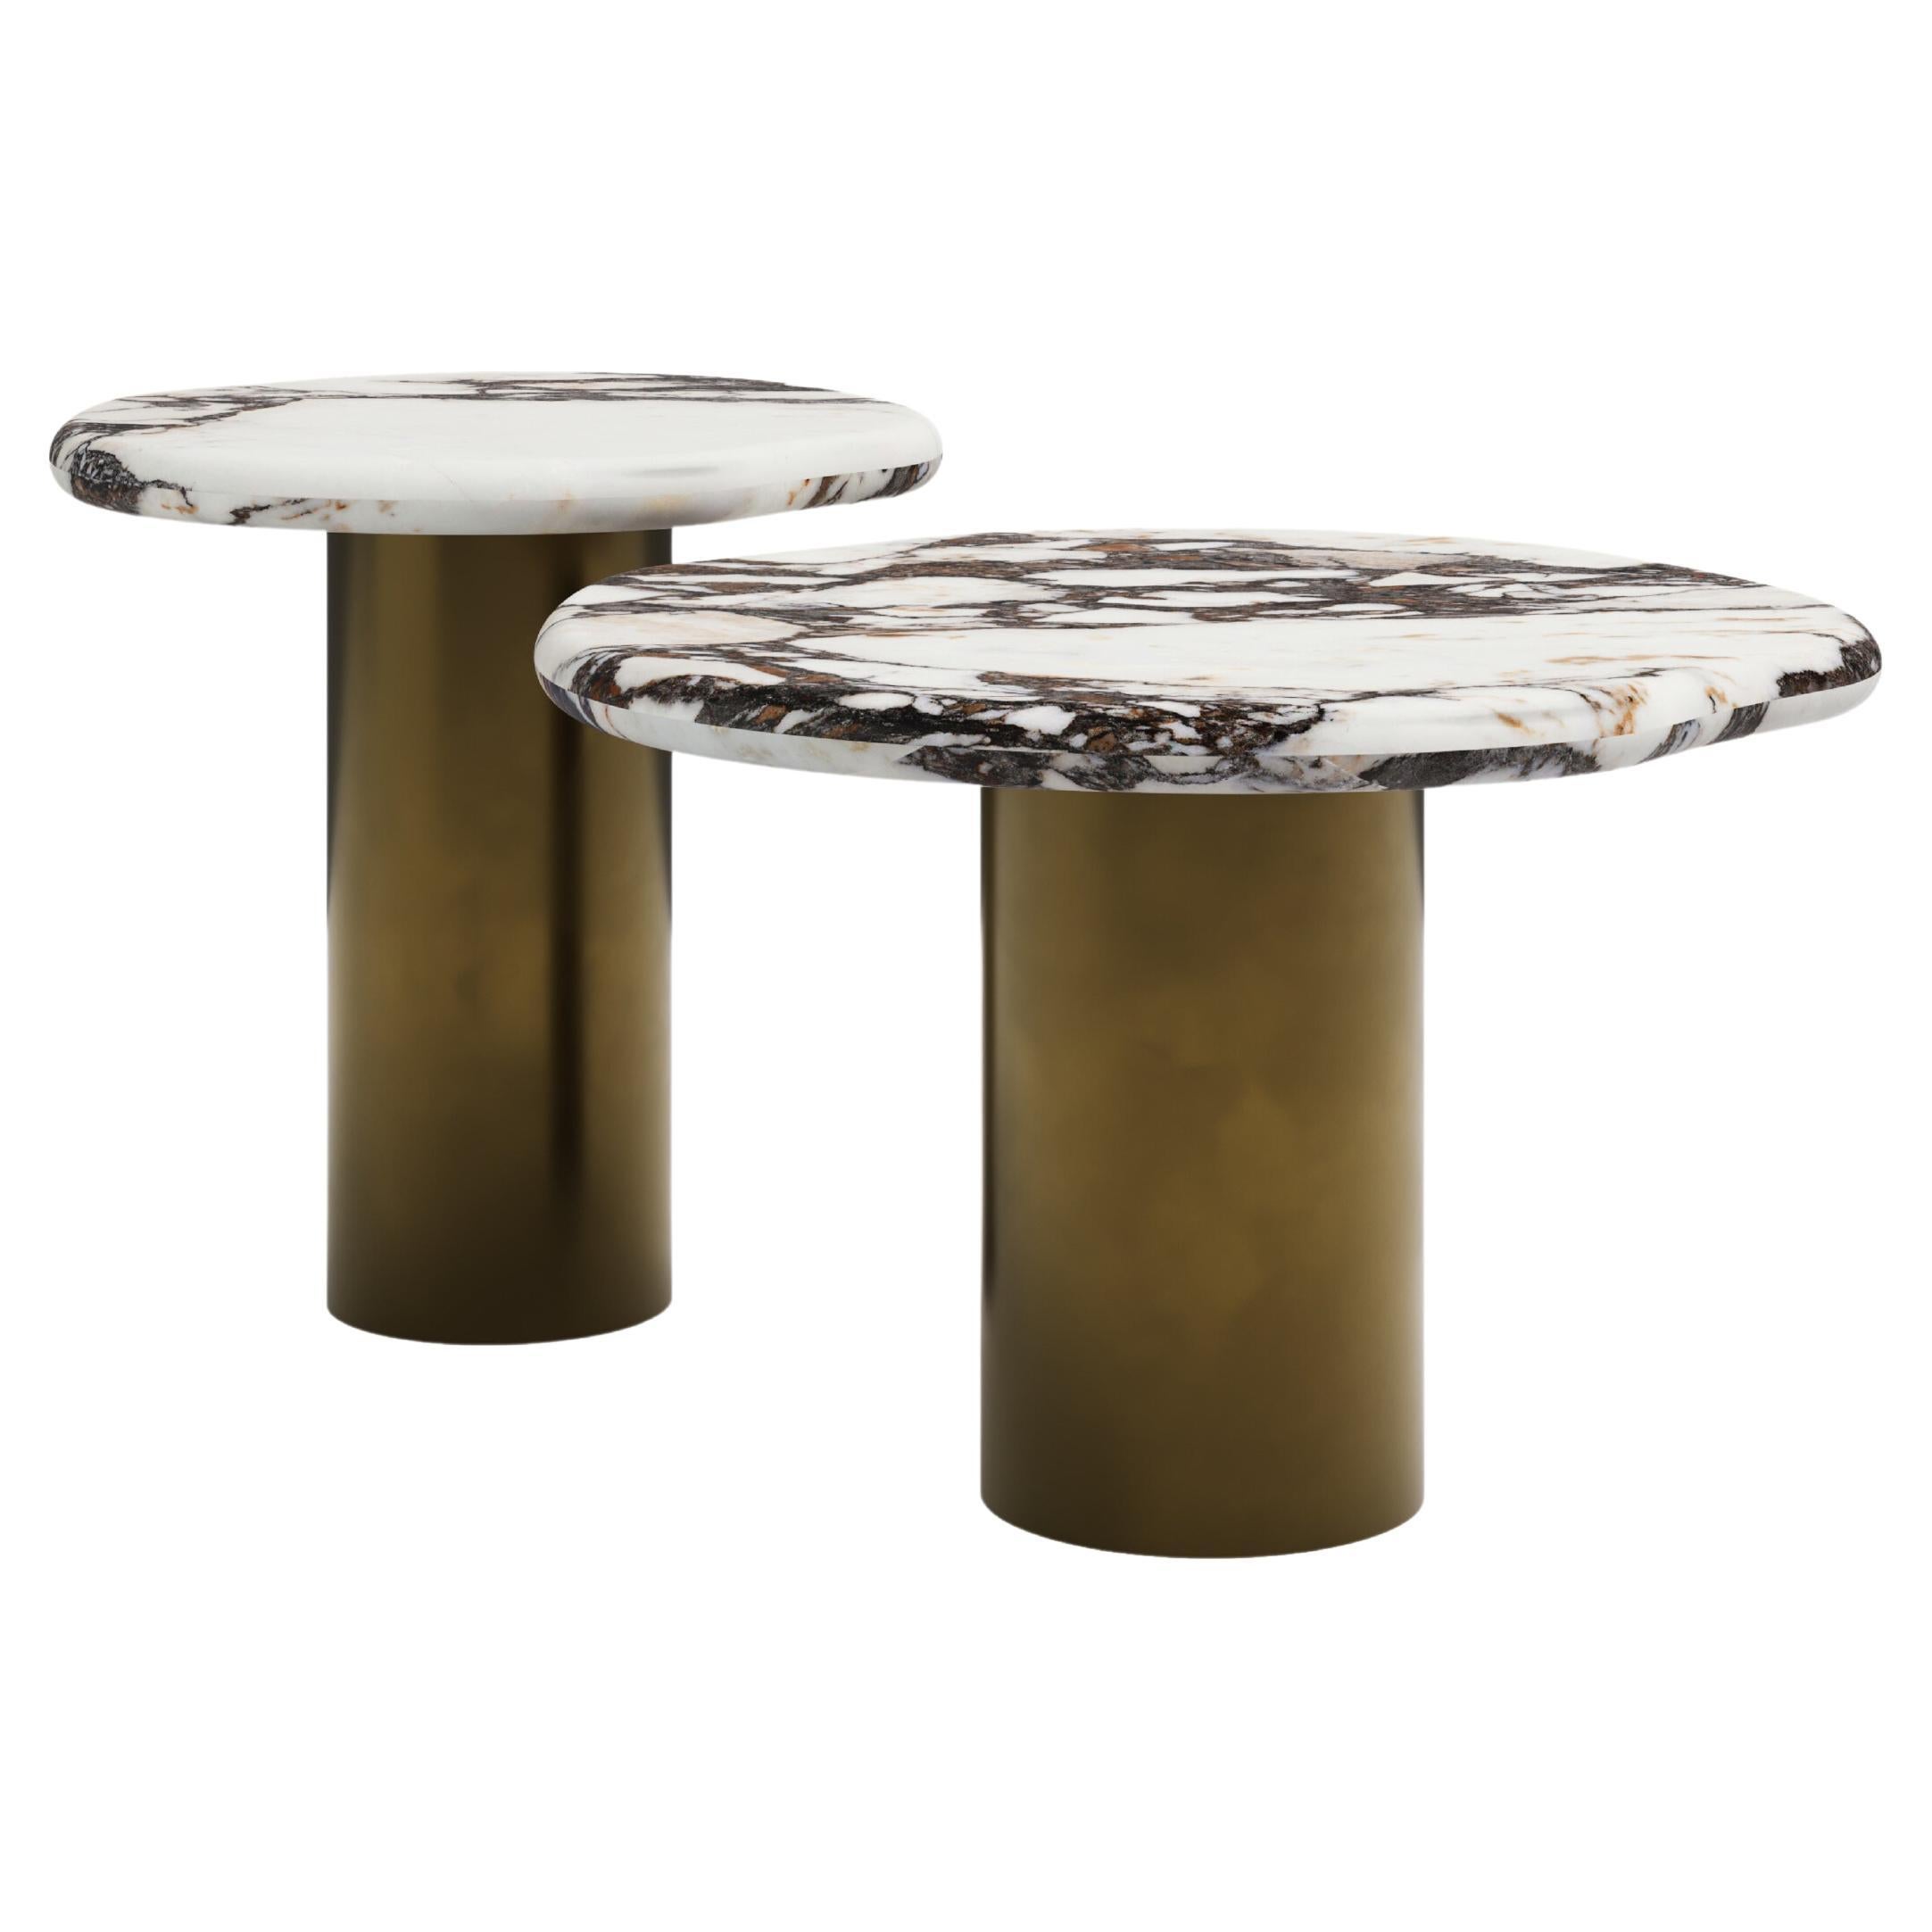 FORM(LA) Lago Round Side Table 18”L x 18”W x 18”H Viola Marble & Antique Bronze For Sale